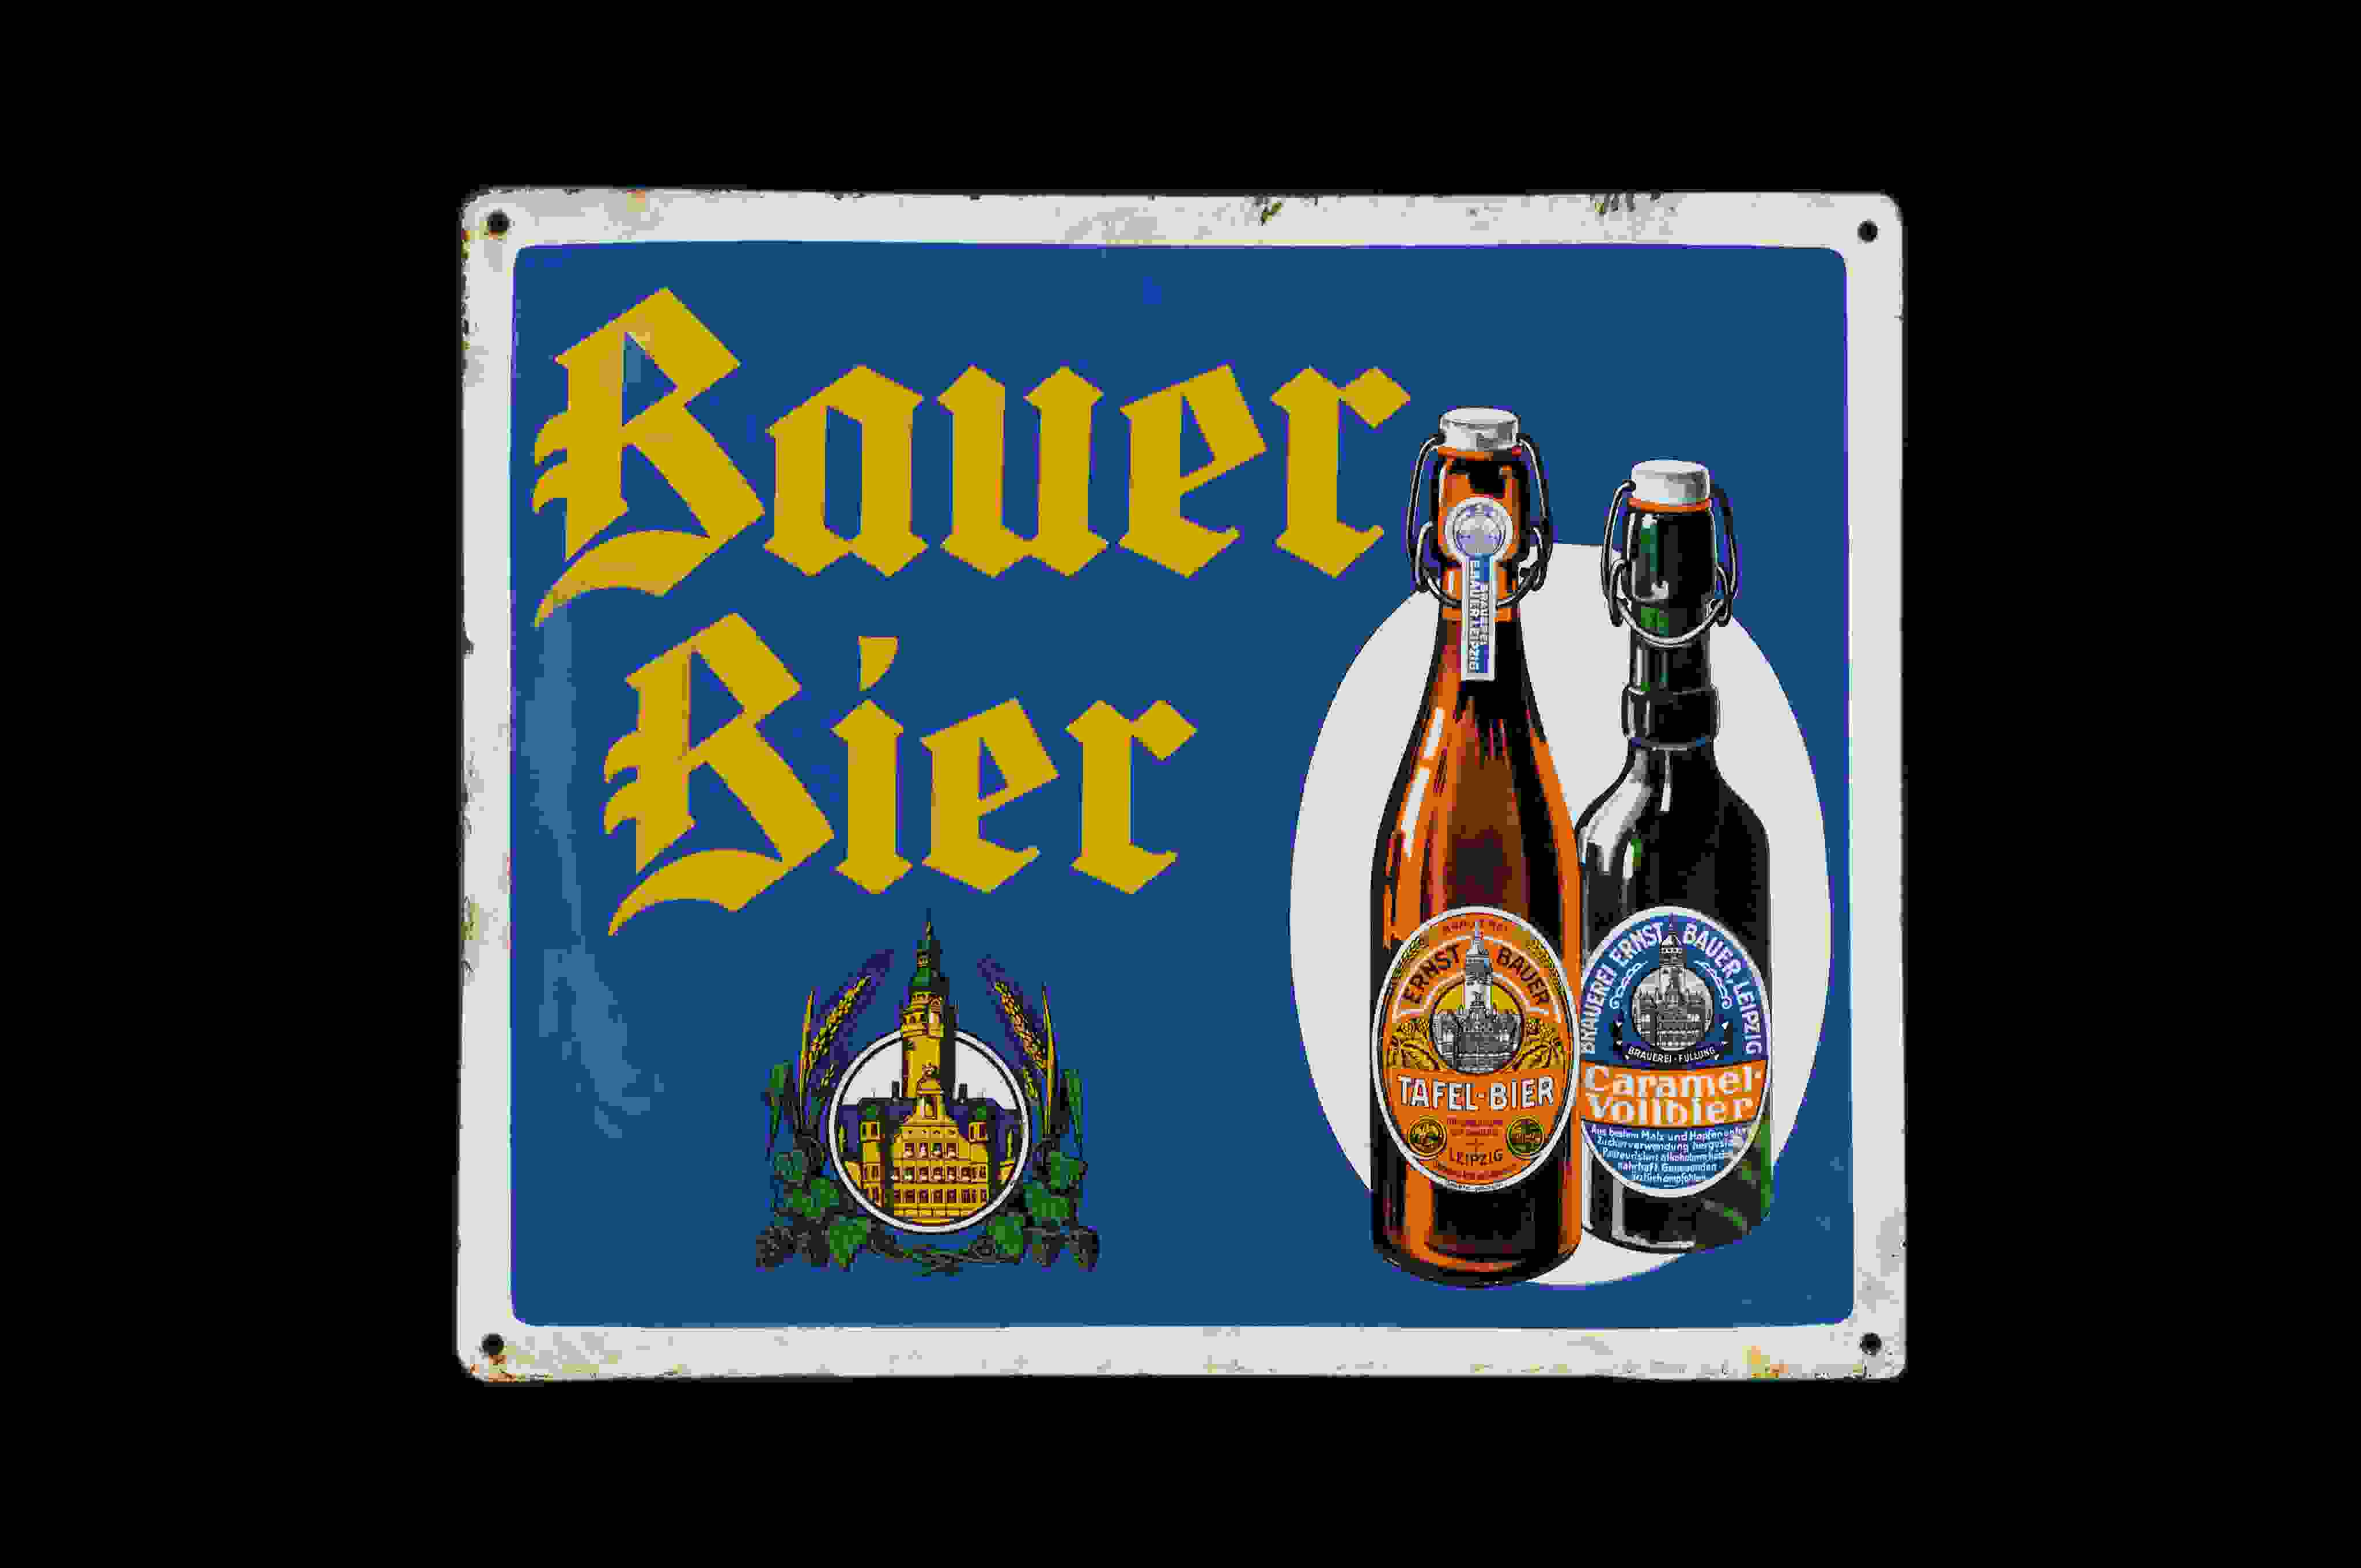 Bauer Bier 